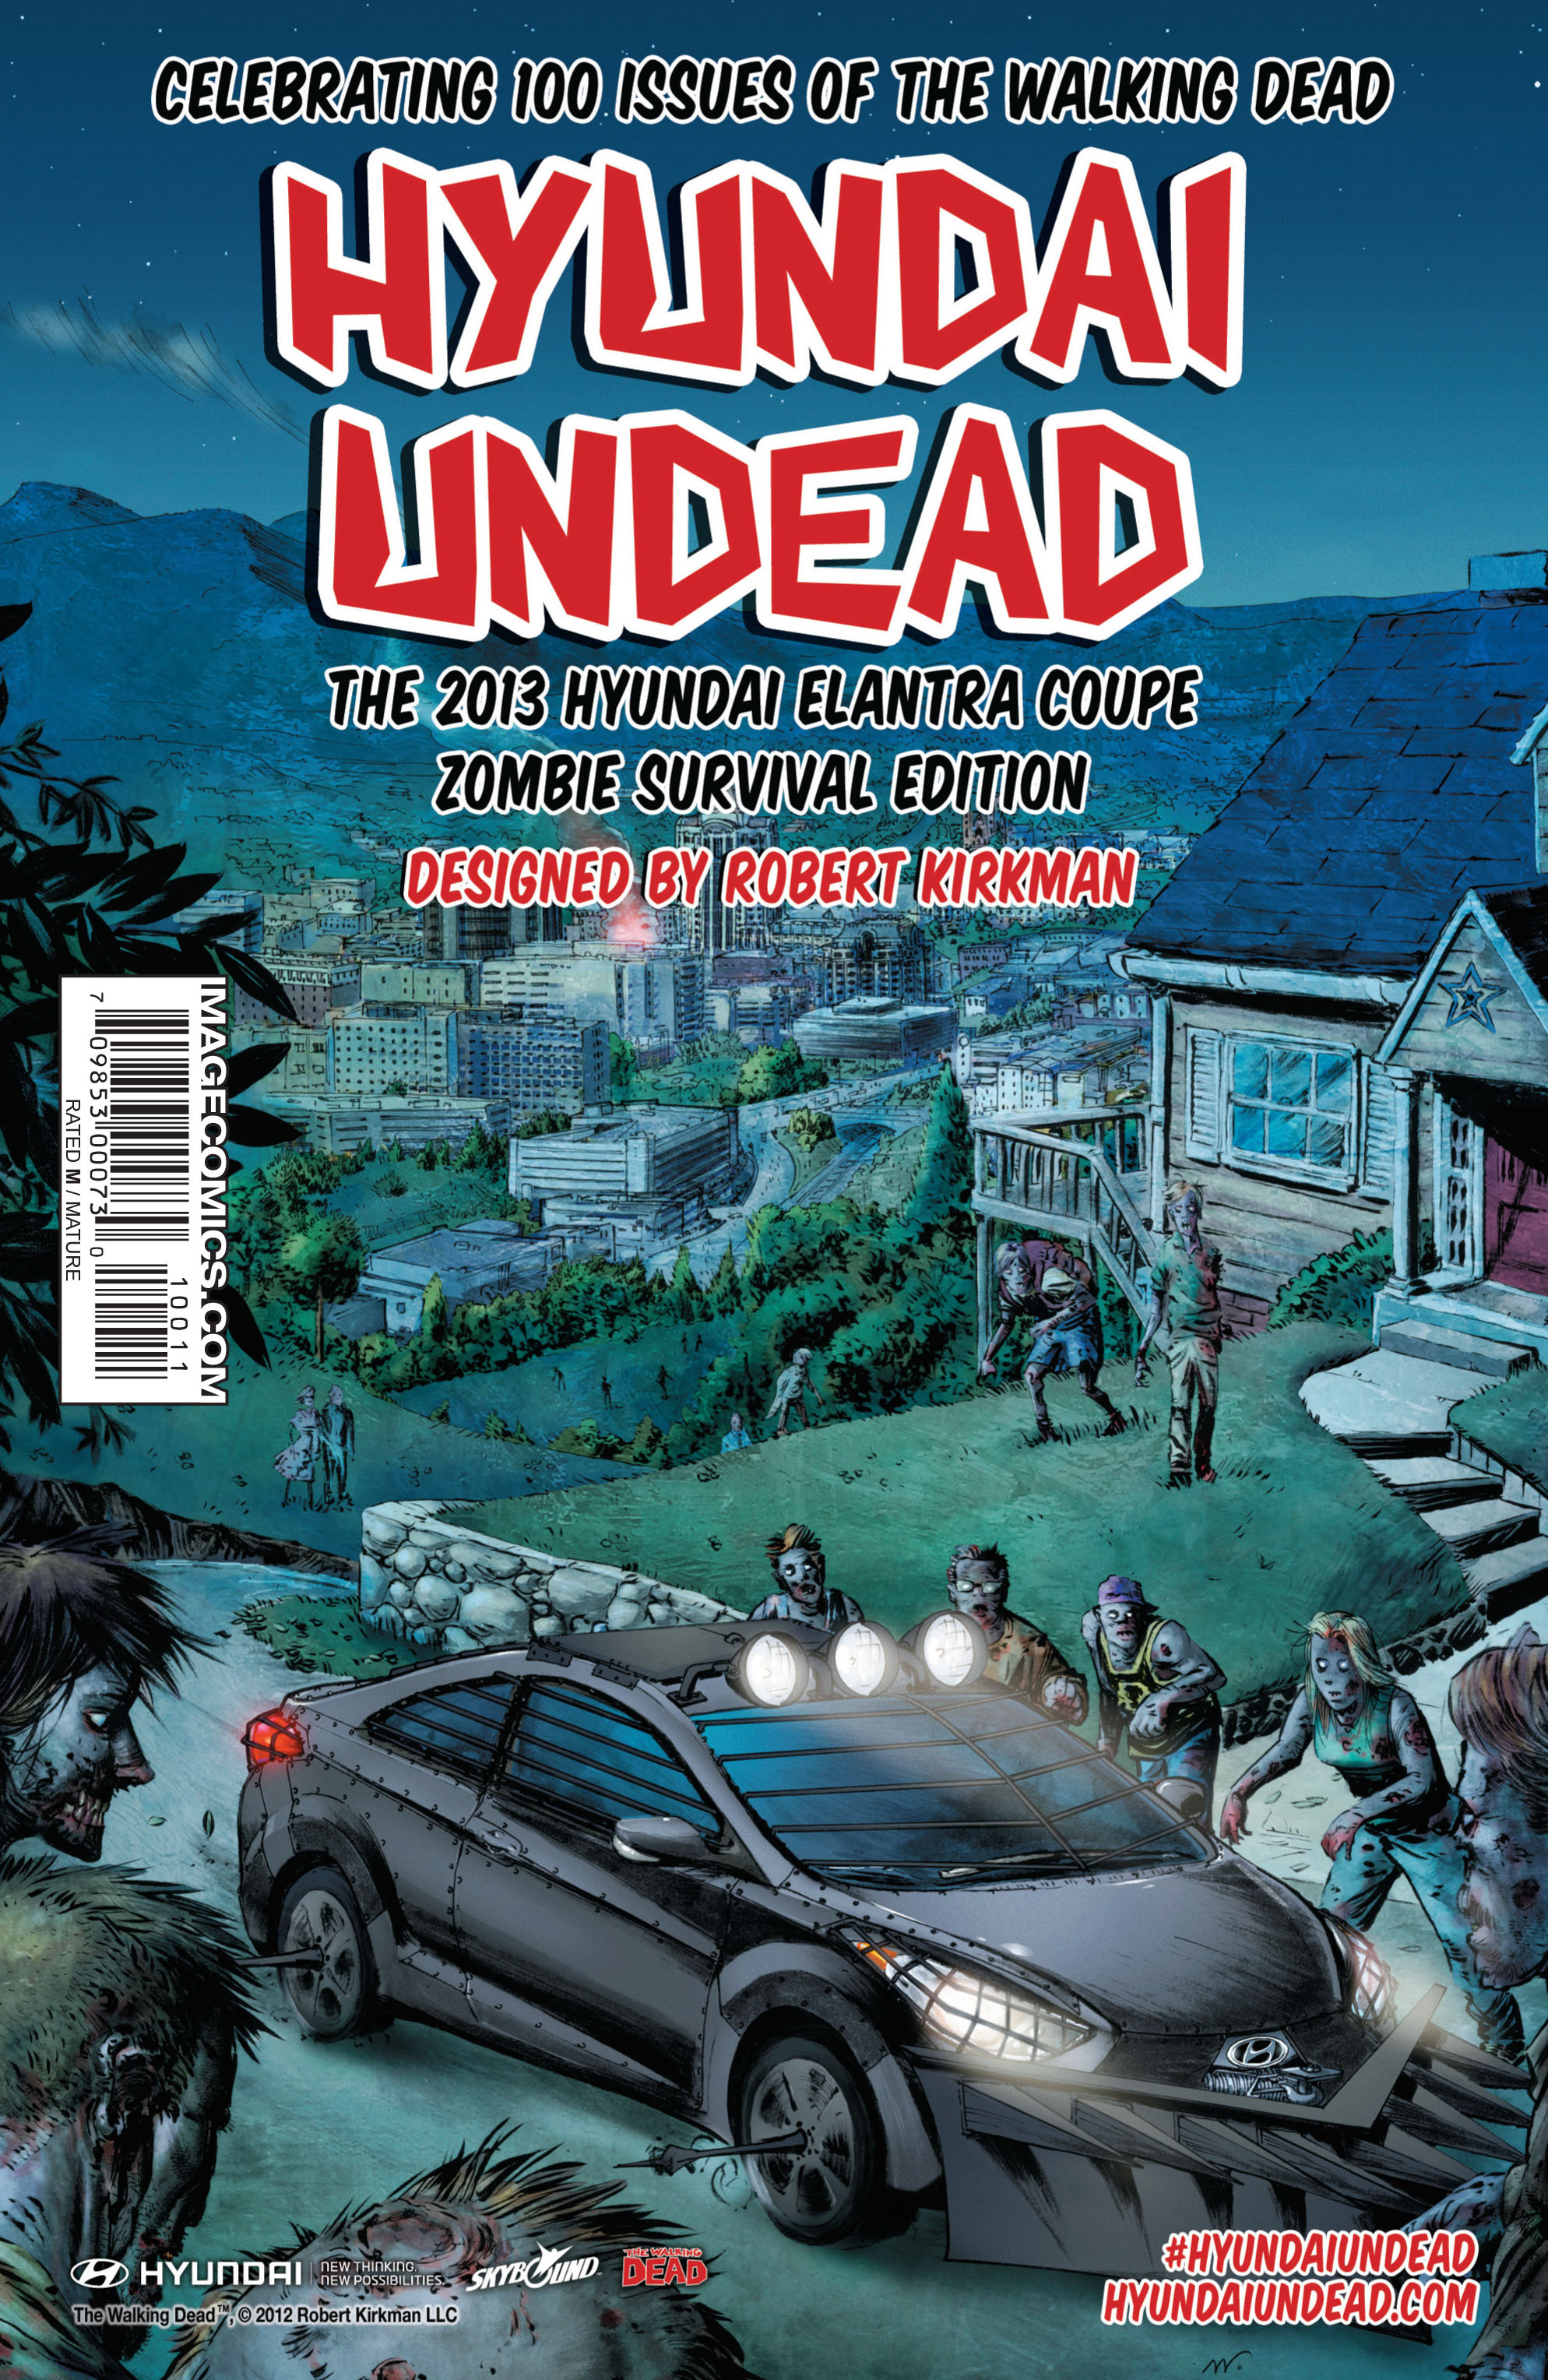 Read online The Walking Dead comic -  Issue #100 - 36